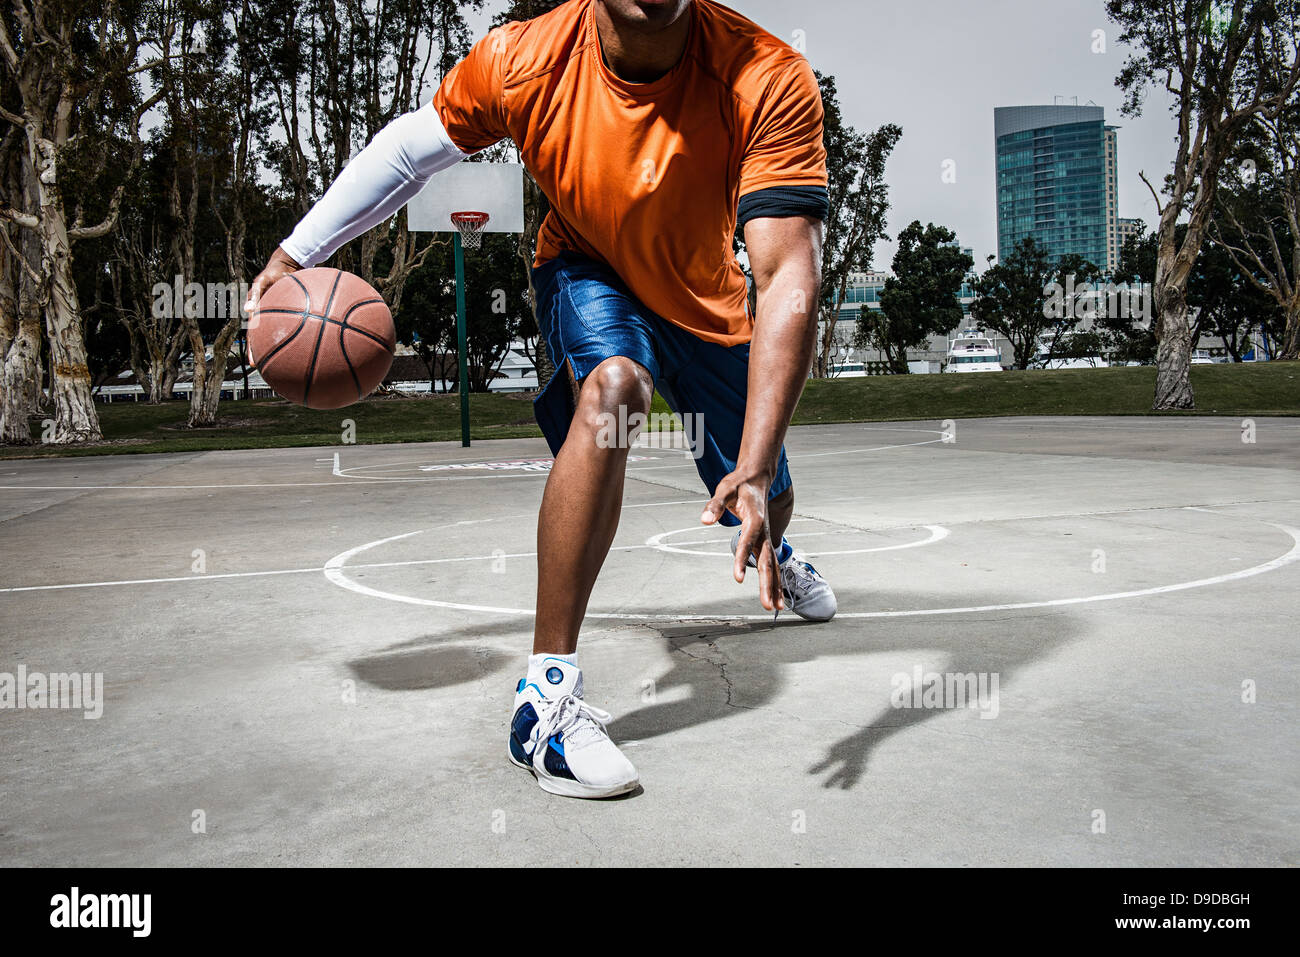 Jeune homme jouant au basket-ball sur cour, Close up Banque D'Images